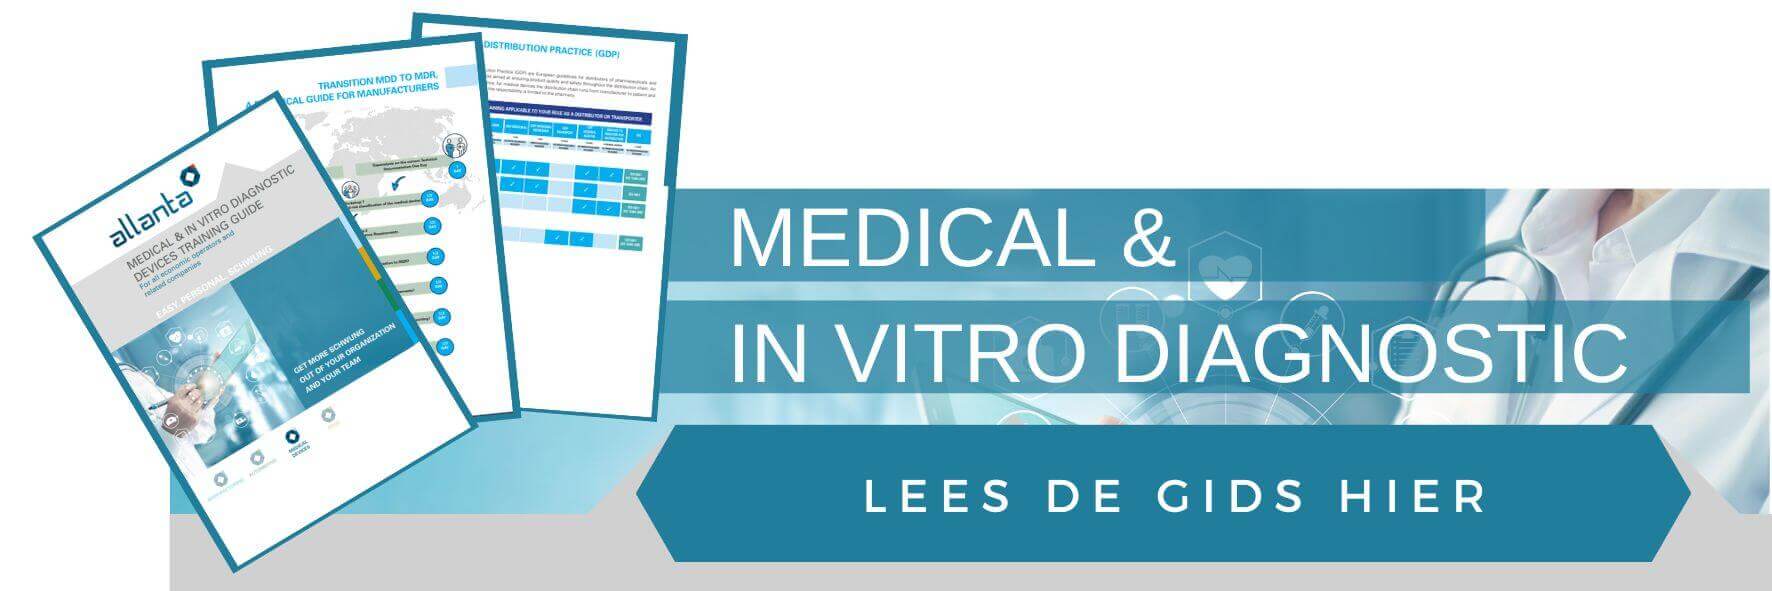 Afbeelding lees de opleidingsgids voor medische hulpmiddelen en in vitro diagnostica voor alle economische operatoren | Allanta sector medical 